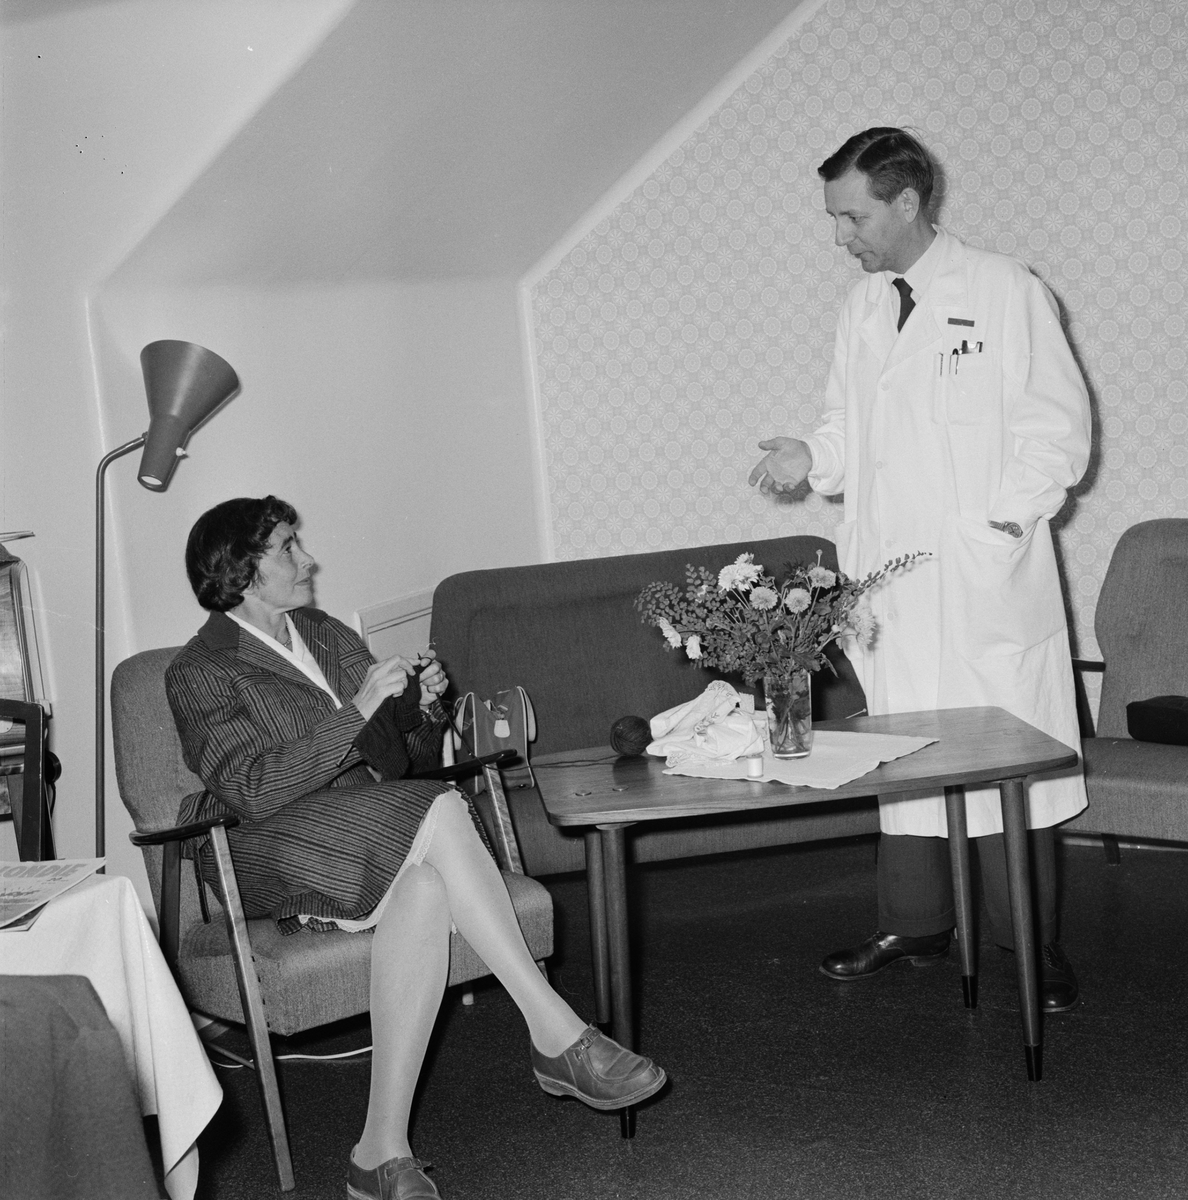 Akademiska sjukhuset, docent Stig Sjölin, Uppsala, oktober 1959